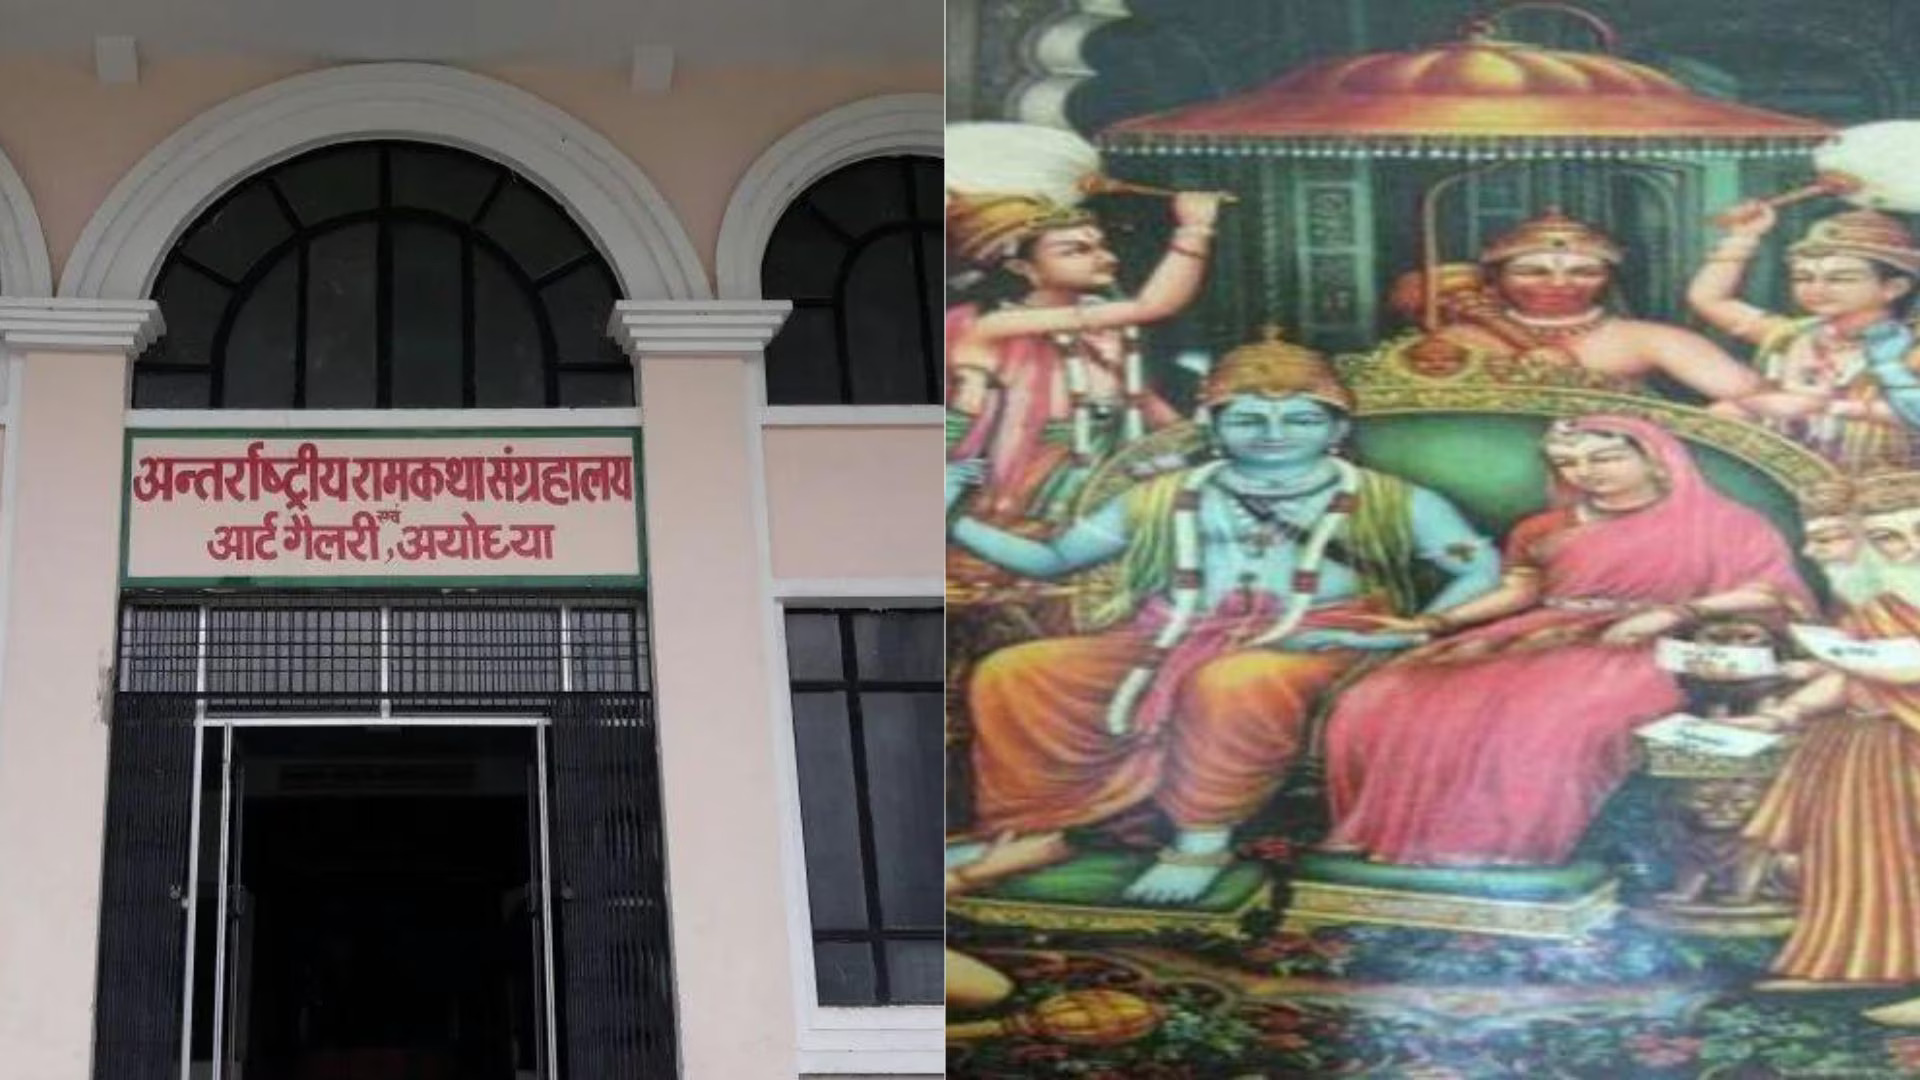 श्रीराम ट्रस्ट को सौंपा जाएगा अयोध्या के ‘अंतर्राष्ट्रीय राम कथा संग्रहालय का कार्यभार’, भगवान श्री राम के इतिहास का खजाना